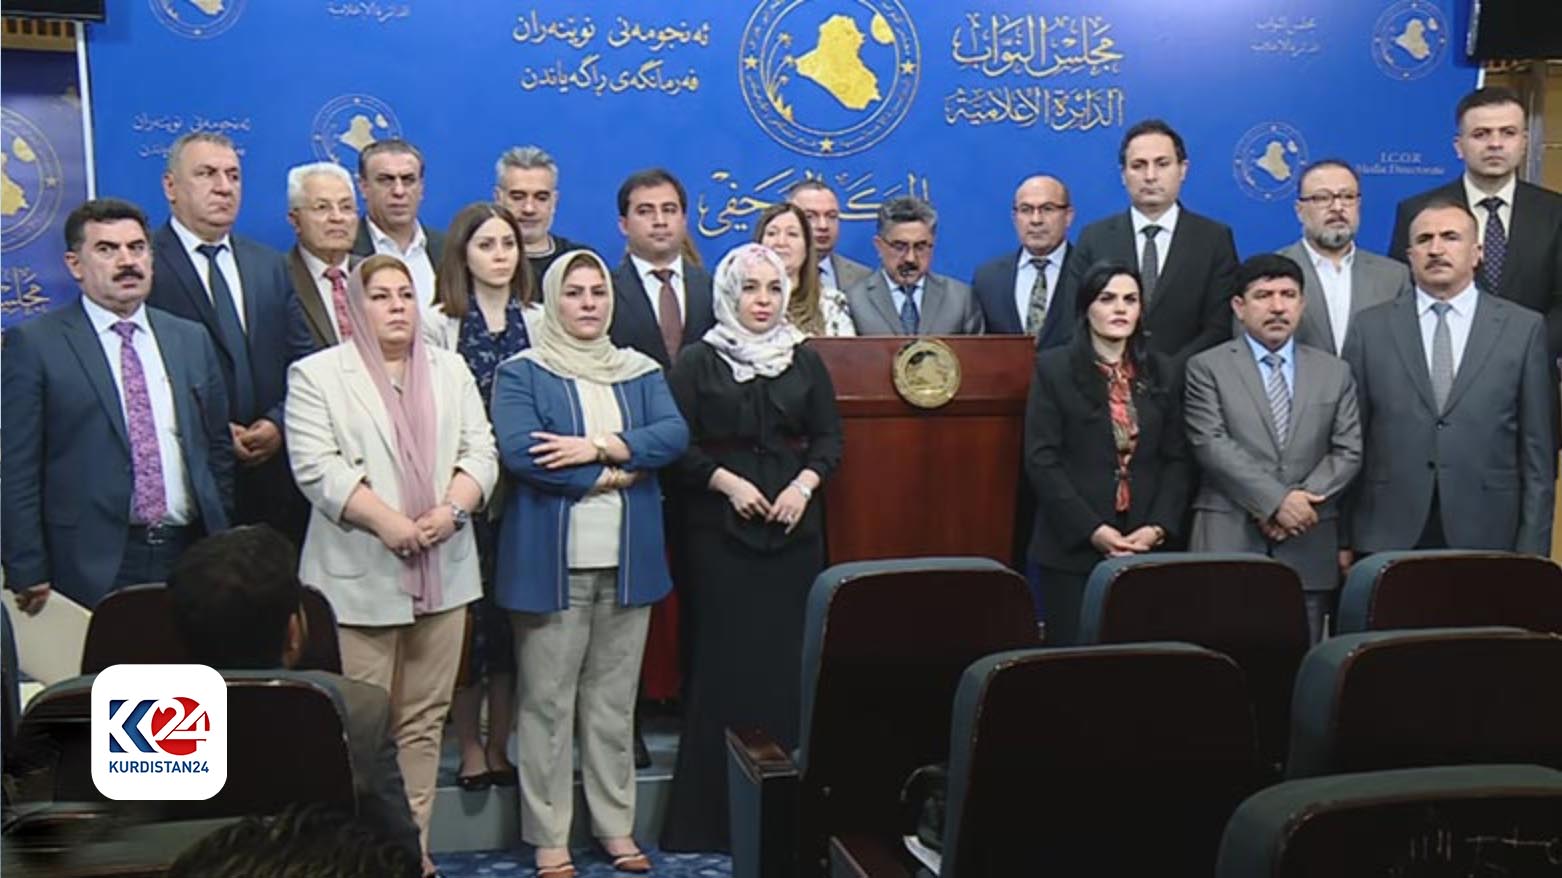 اعضای فراکسیون نمایندگان پارت دموکرات کوردستان